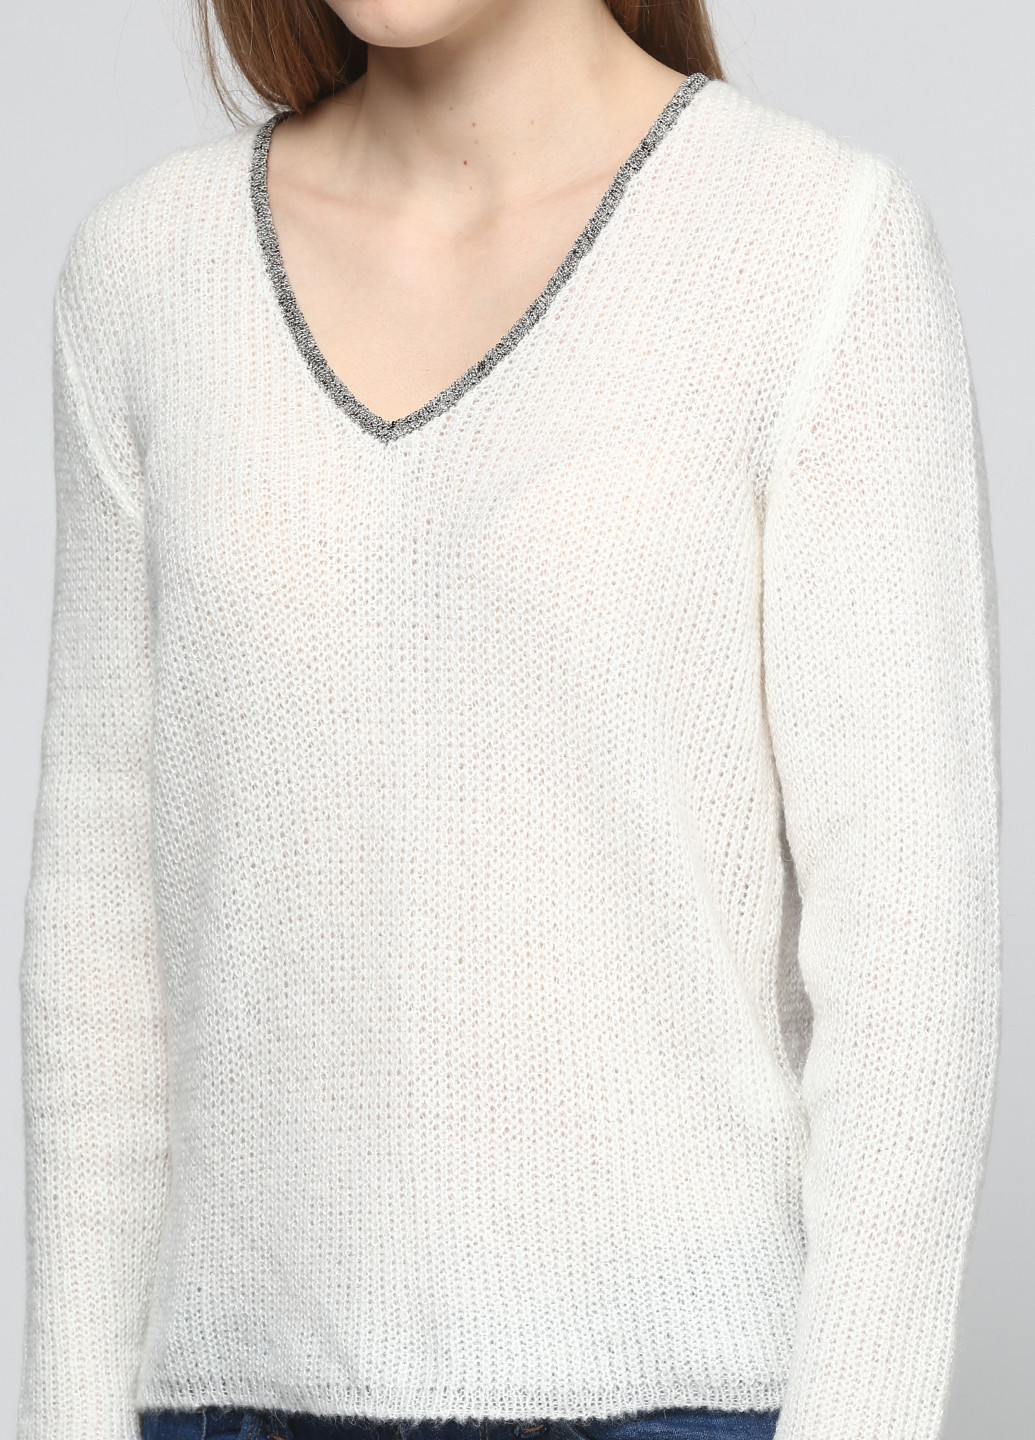 Белый демисезонный пуловер пуловер Folgore Milano